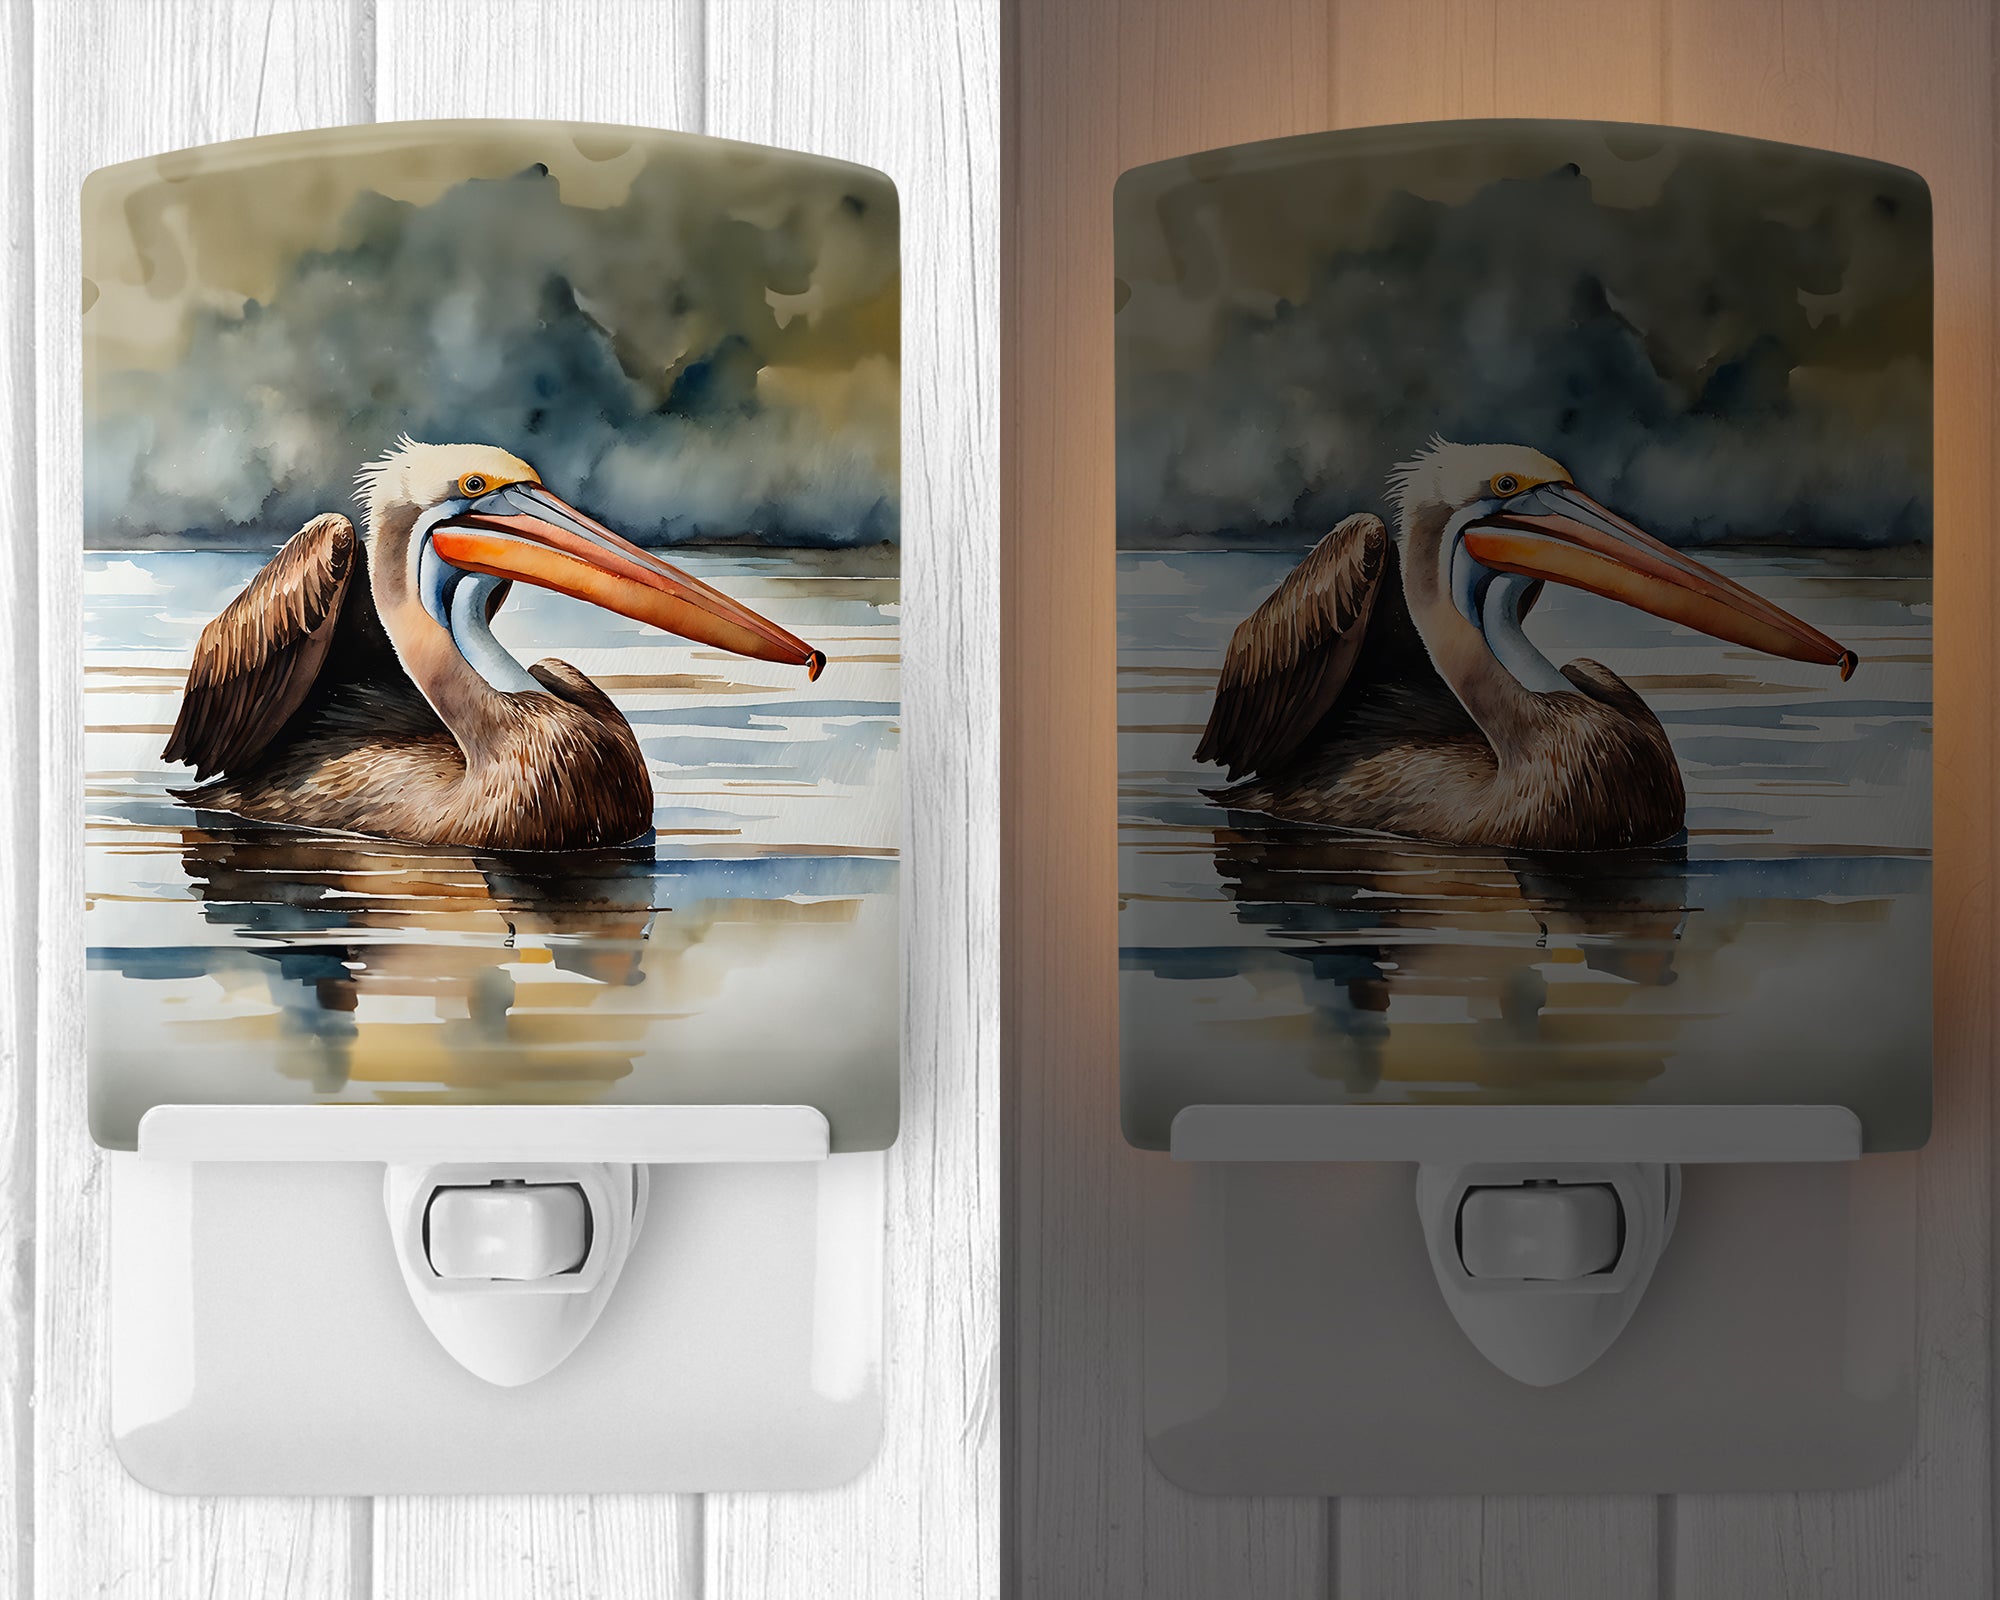 Buy this Pelican Ceramic Night Light